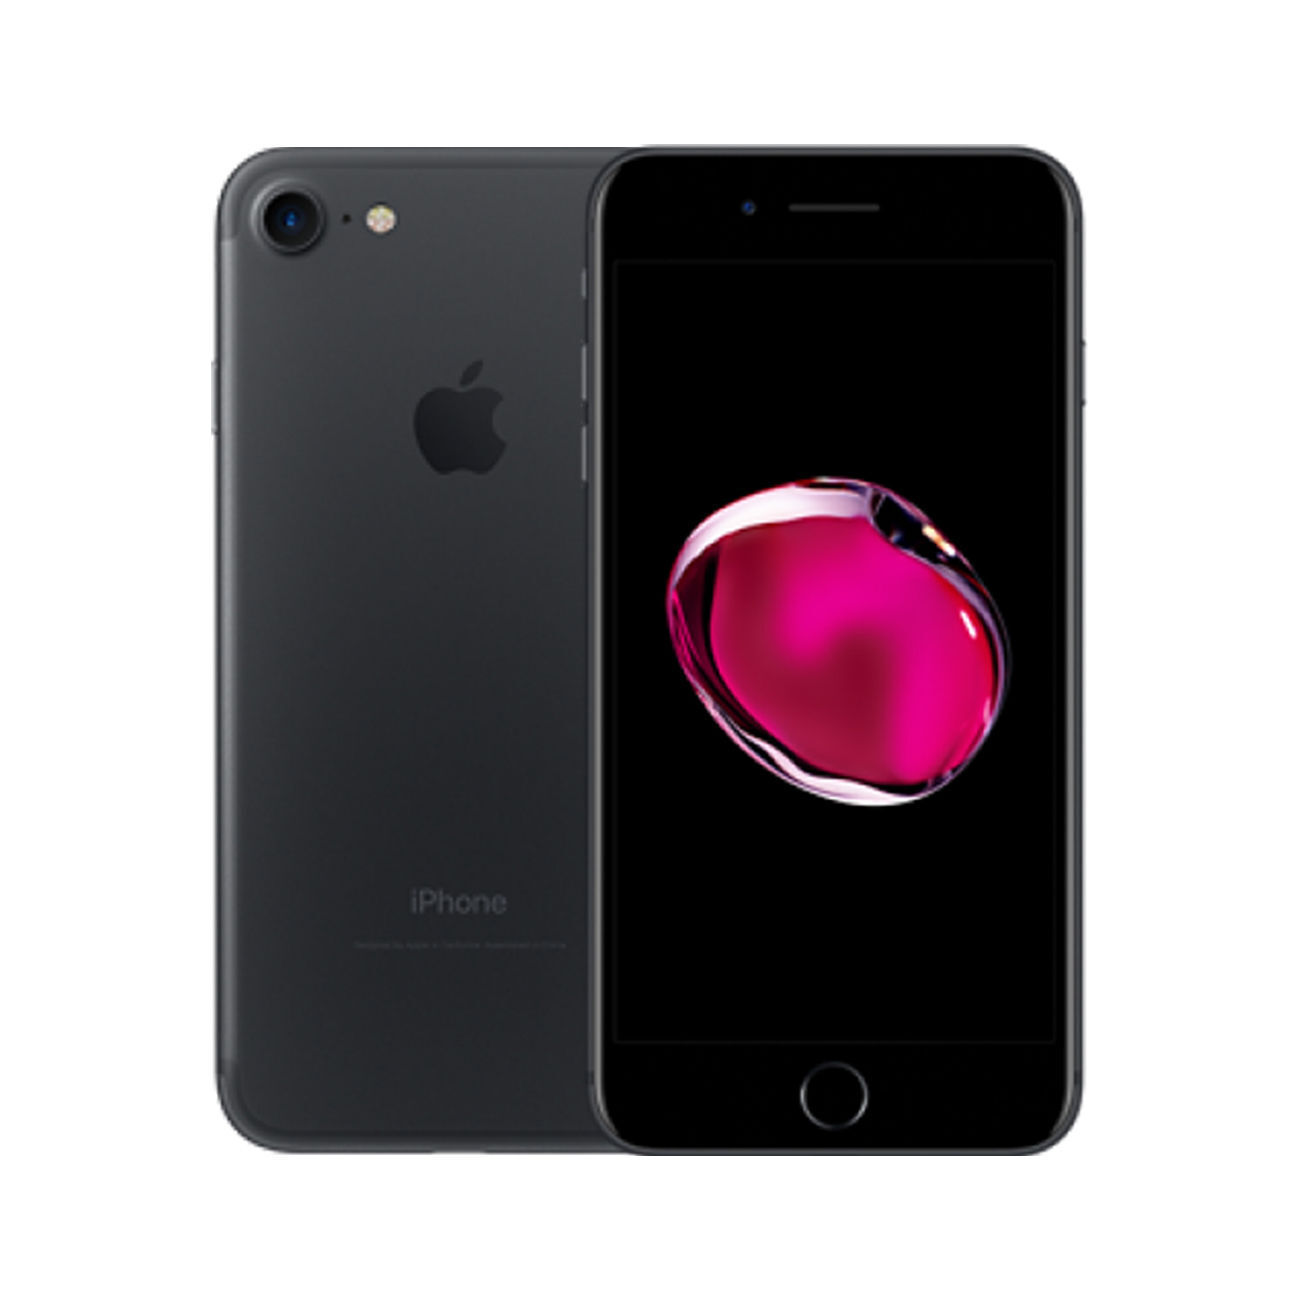 スマートフォン/携帯電話 スマートフォン本体 Apple iPhone 7 32GB 128GB 256GB Black Jet Black Gold Silver Rose 